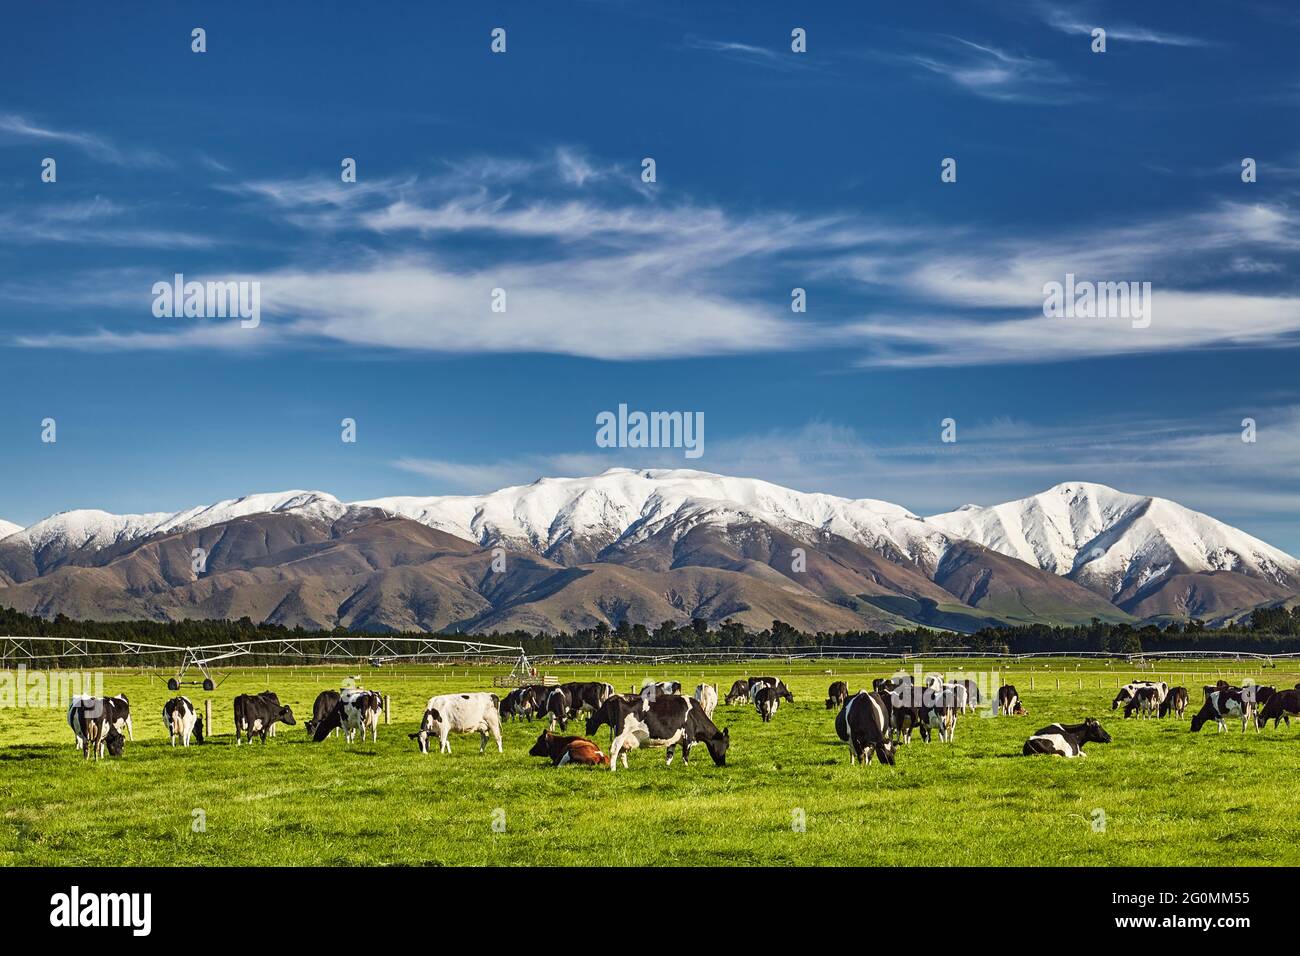 Paisaje con montañas nevadas y el pastoreo de vacas, Nueva Zelanda Foto de stock